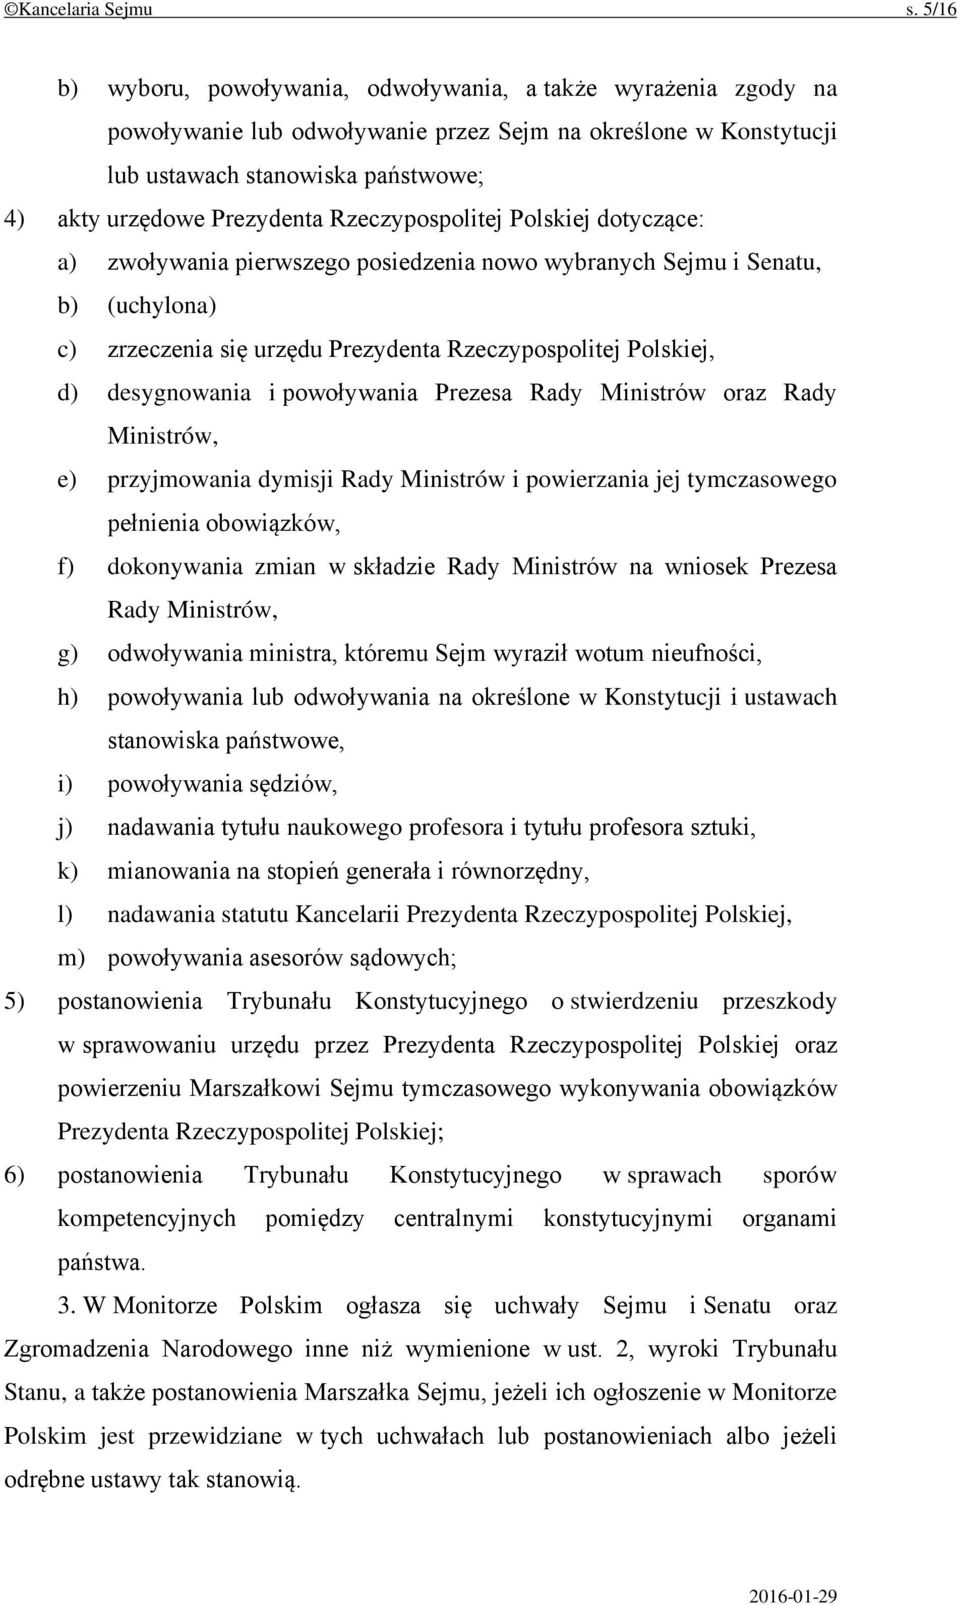 Rzeczypospolitej Polskiej dotyczące: a) zwoływania pierwszego posiedzenia nowo wybranych Sejmu i Senatu, b) (uchylona) c) zrzeczenia się urzędu Prezydenta Rzeczypospolitej Polskiej, d) desygnowania i